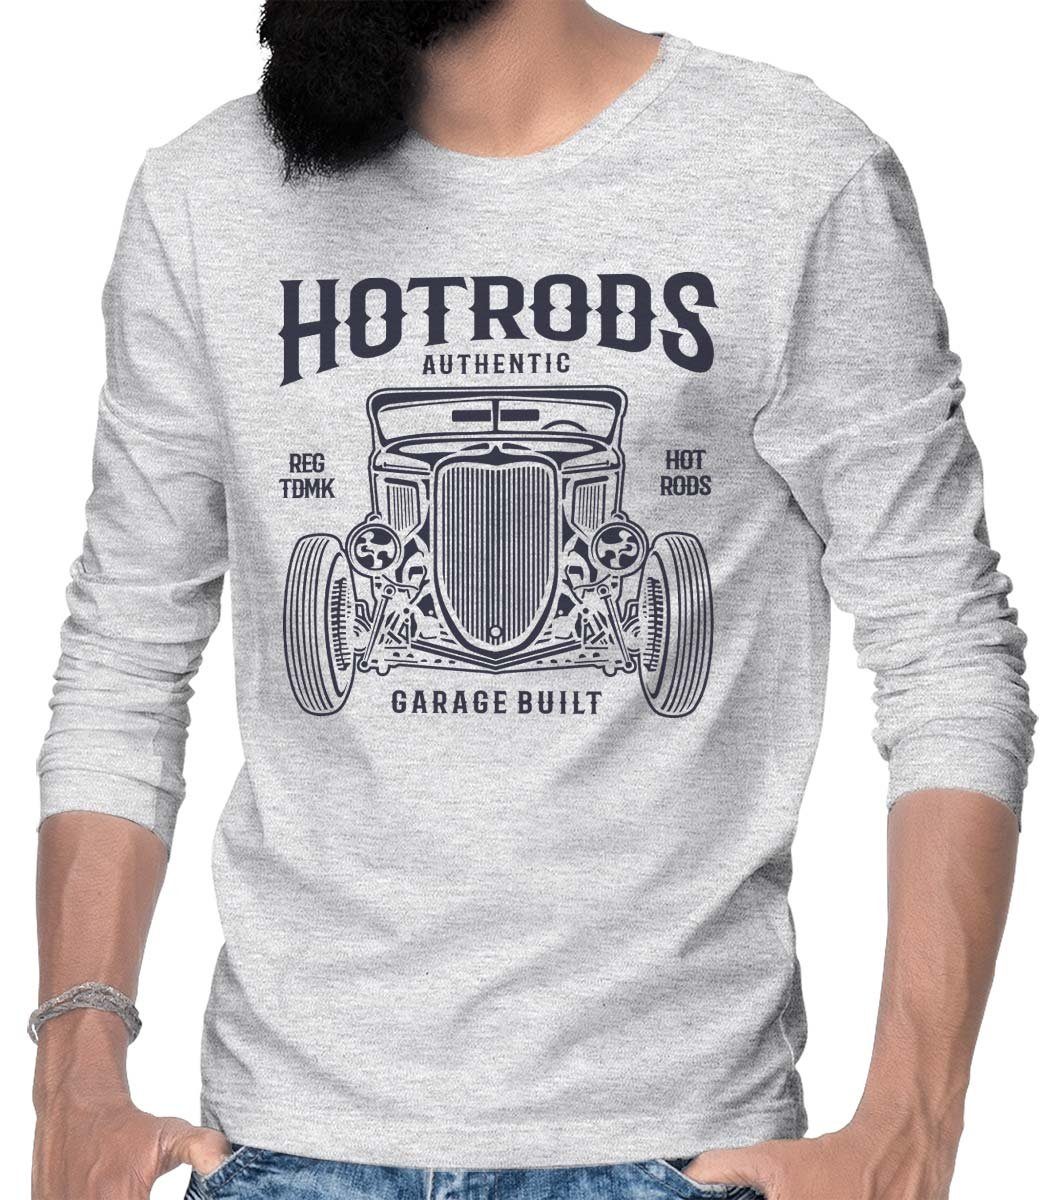 Rebel On Wheels Longsleeve HerrenLangarm T-Shirt Longsleeve Tee Hotrods mit Hotrod / US-Car Motiv Grau Melange